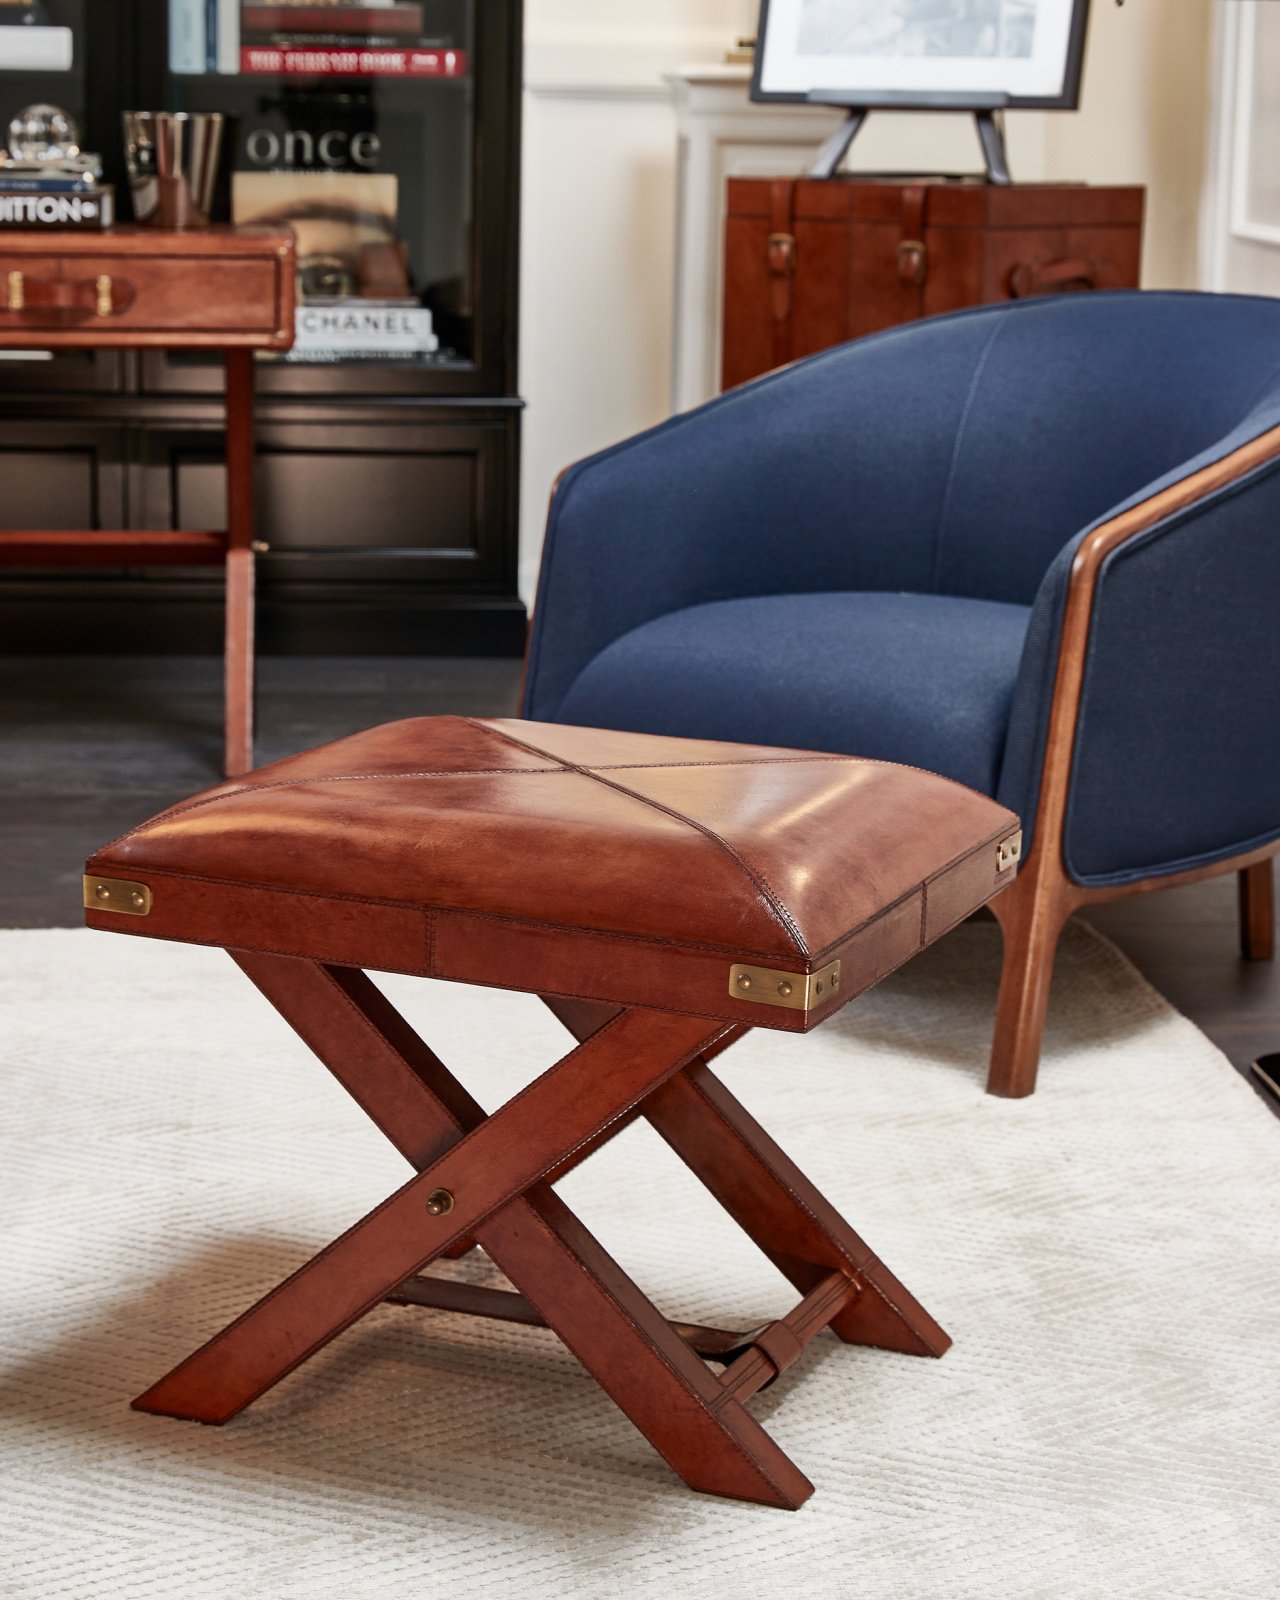 Kensington stool, leather